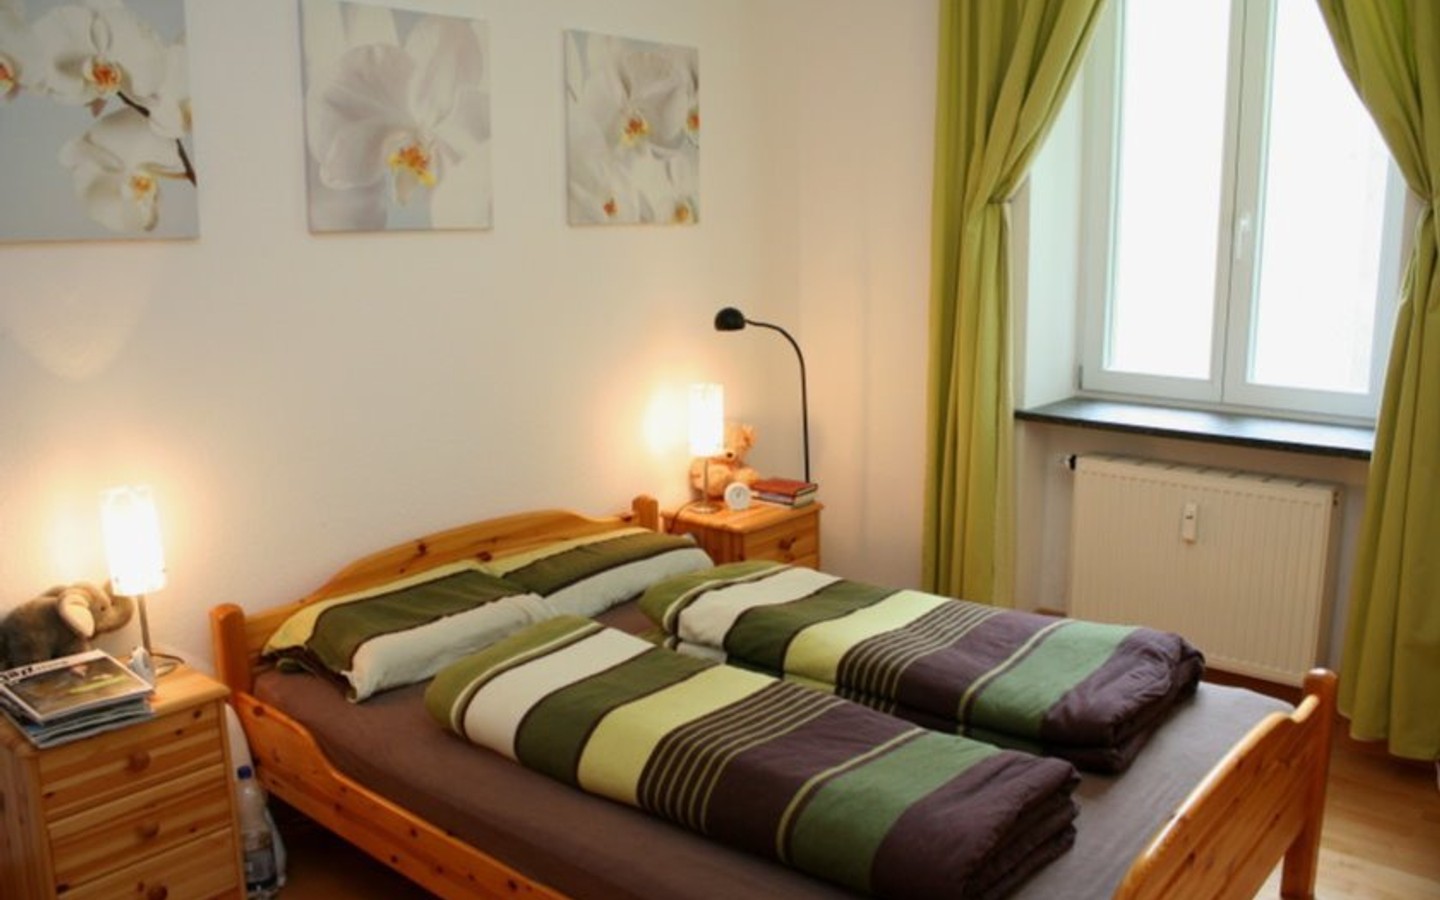 Schlafzimmer - Sehr ansprechende Vierzimmerwohnung in einem Stadthaus in zentralster Lage von Heidelberg